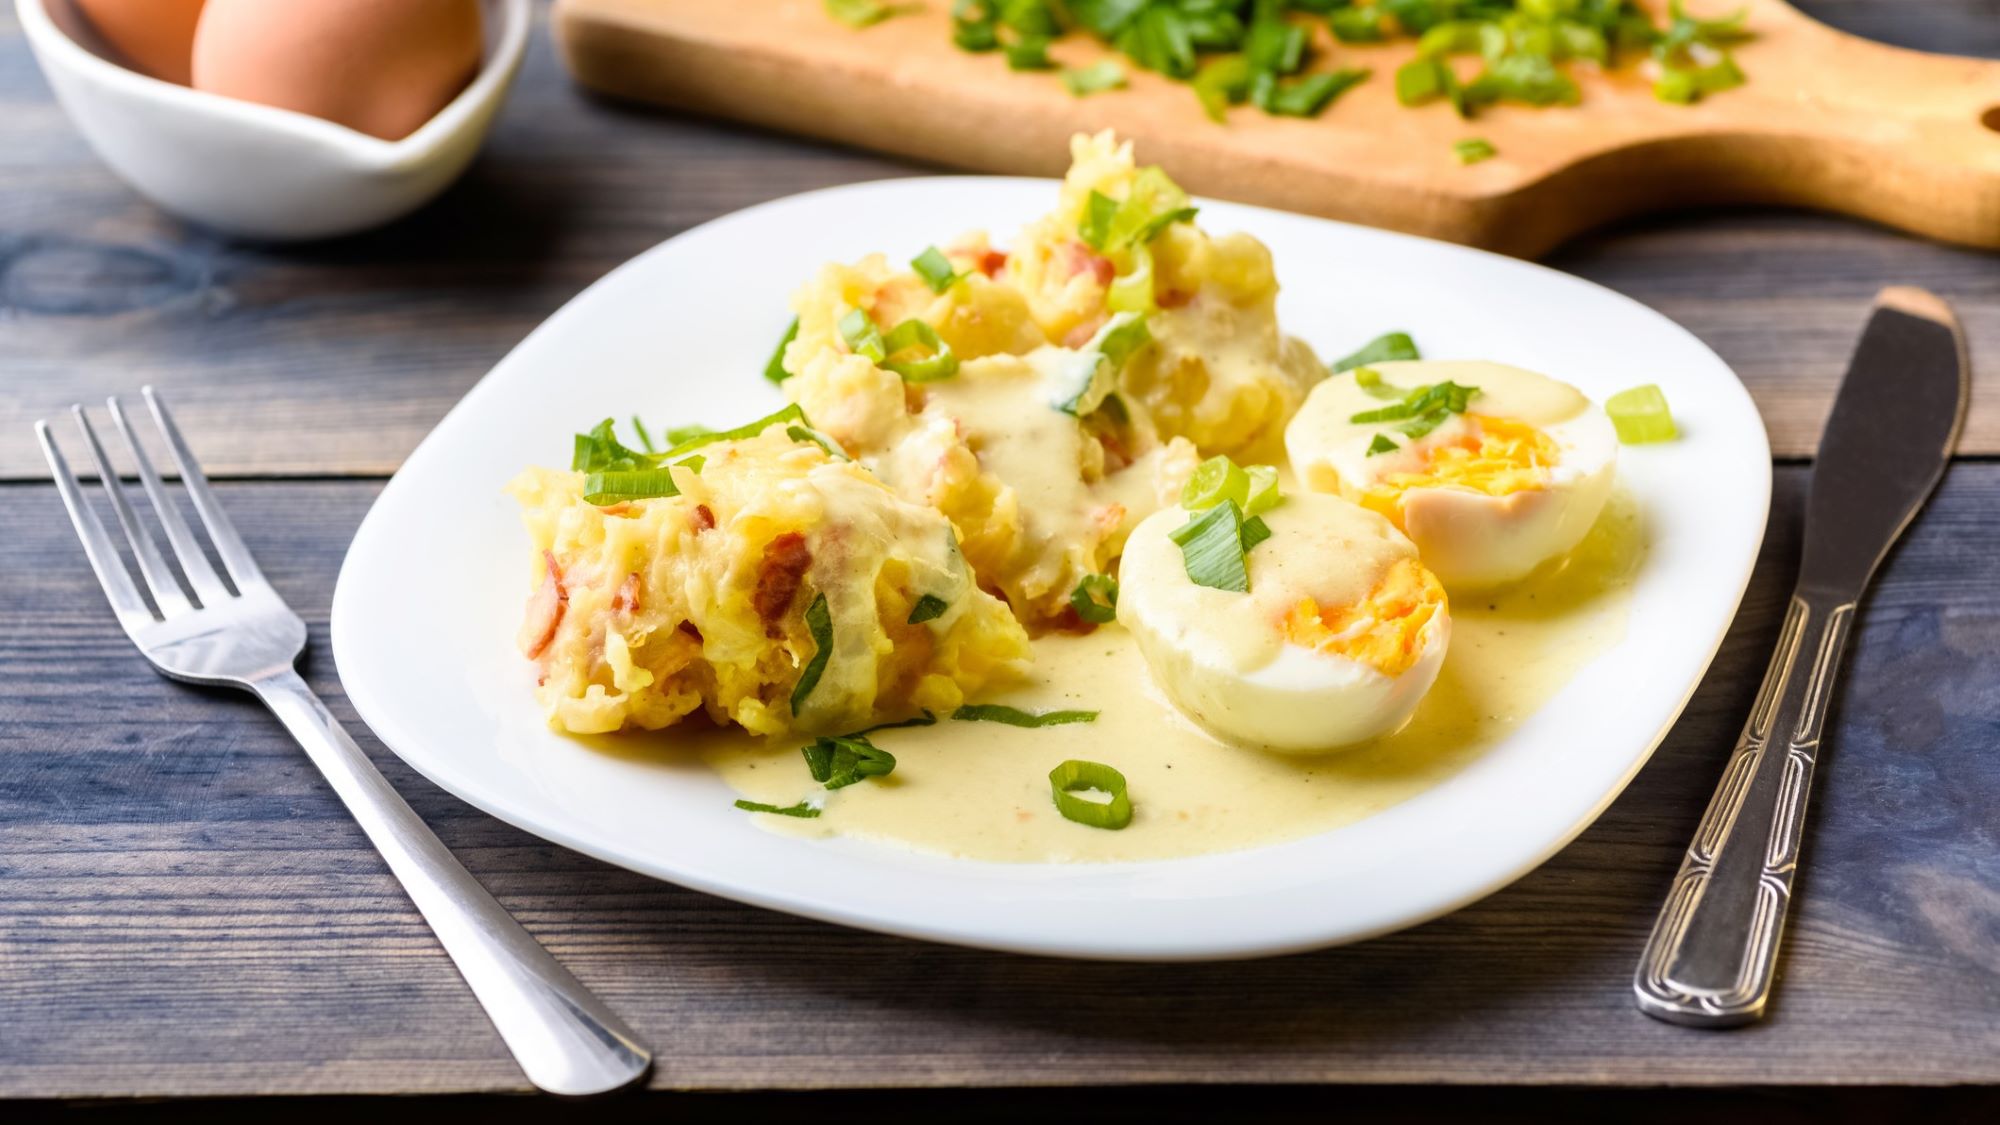 Kartoffelbrei mit halbierten Eiern in Send-Sauce und Frühlingszwiebeln auf weißem Teller, daneben Messer und Gabel.